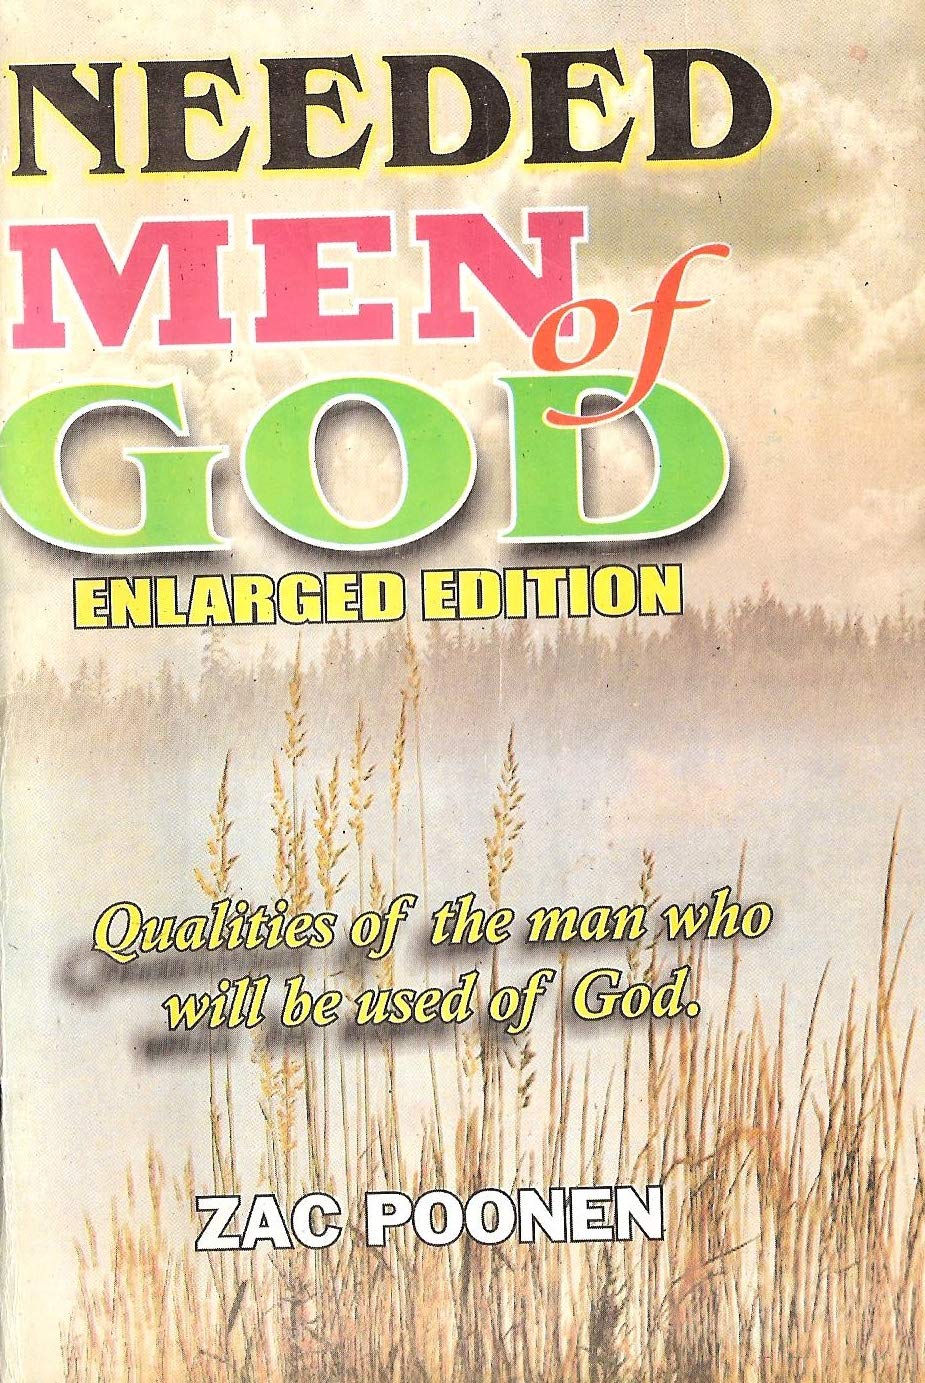 DOWNLOAD PDF: Needed Men of God by Zac Poonen 19